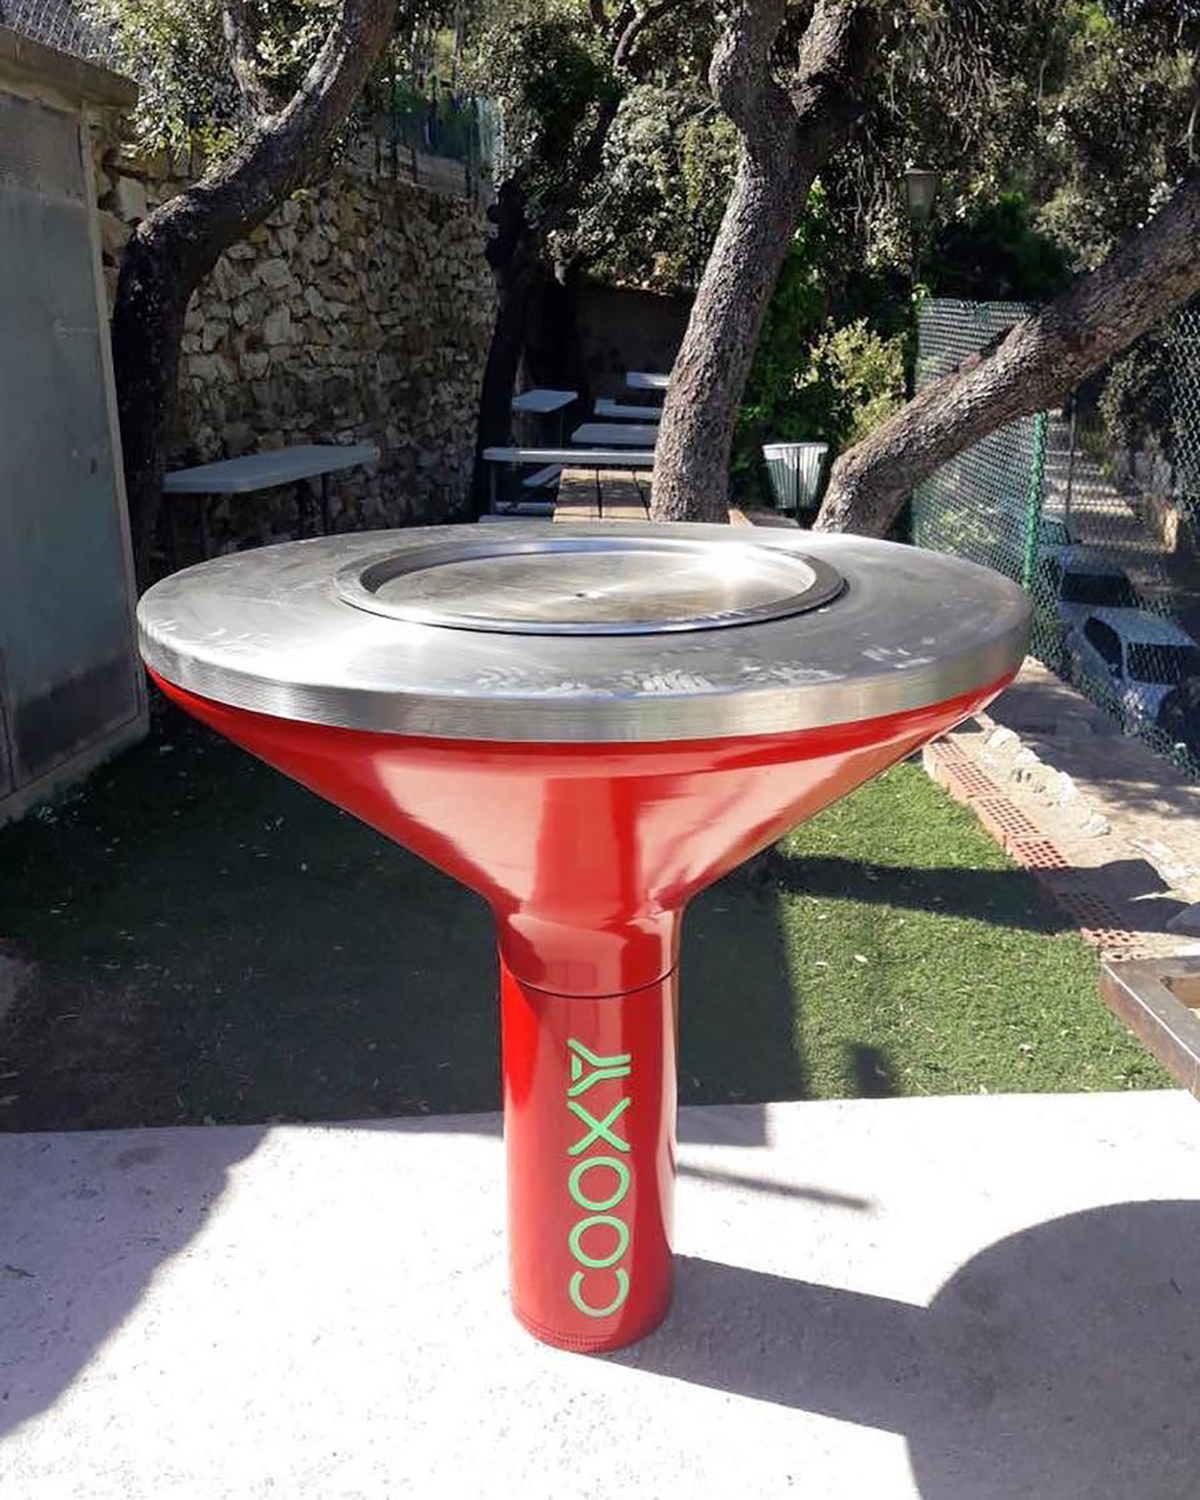 Cooxy : un barbecue collaboratif et connecté pour les lieux publics ! (vidéo) Par Justine Mellado Barbecues-urbains-electriques-connectes-cooxy-0